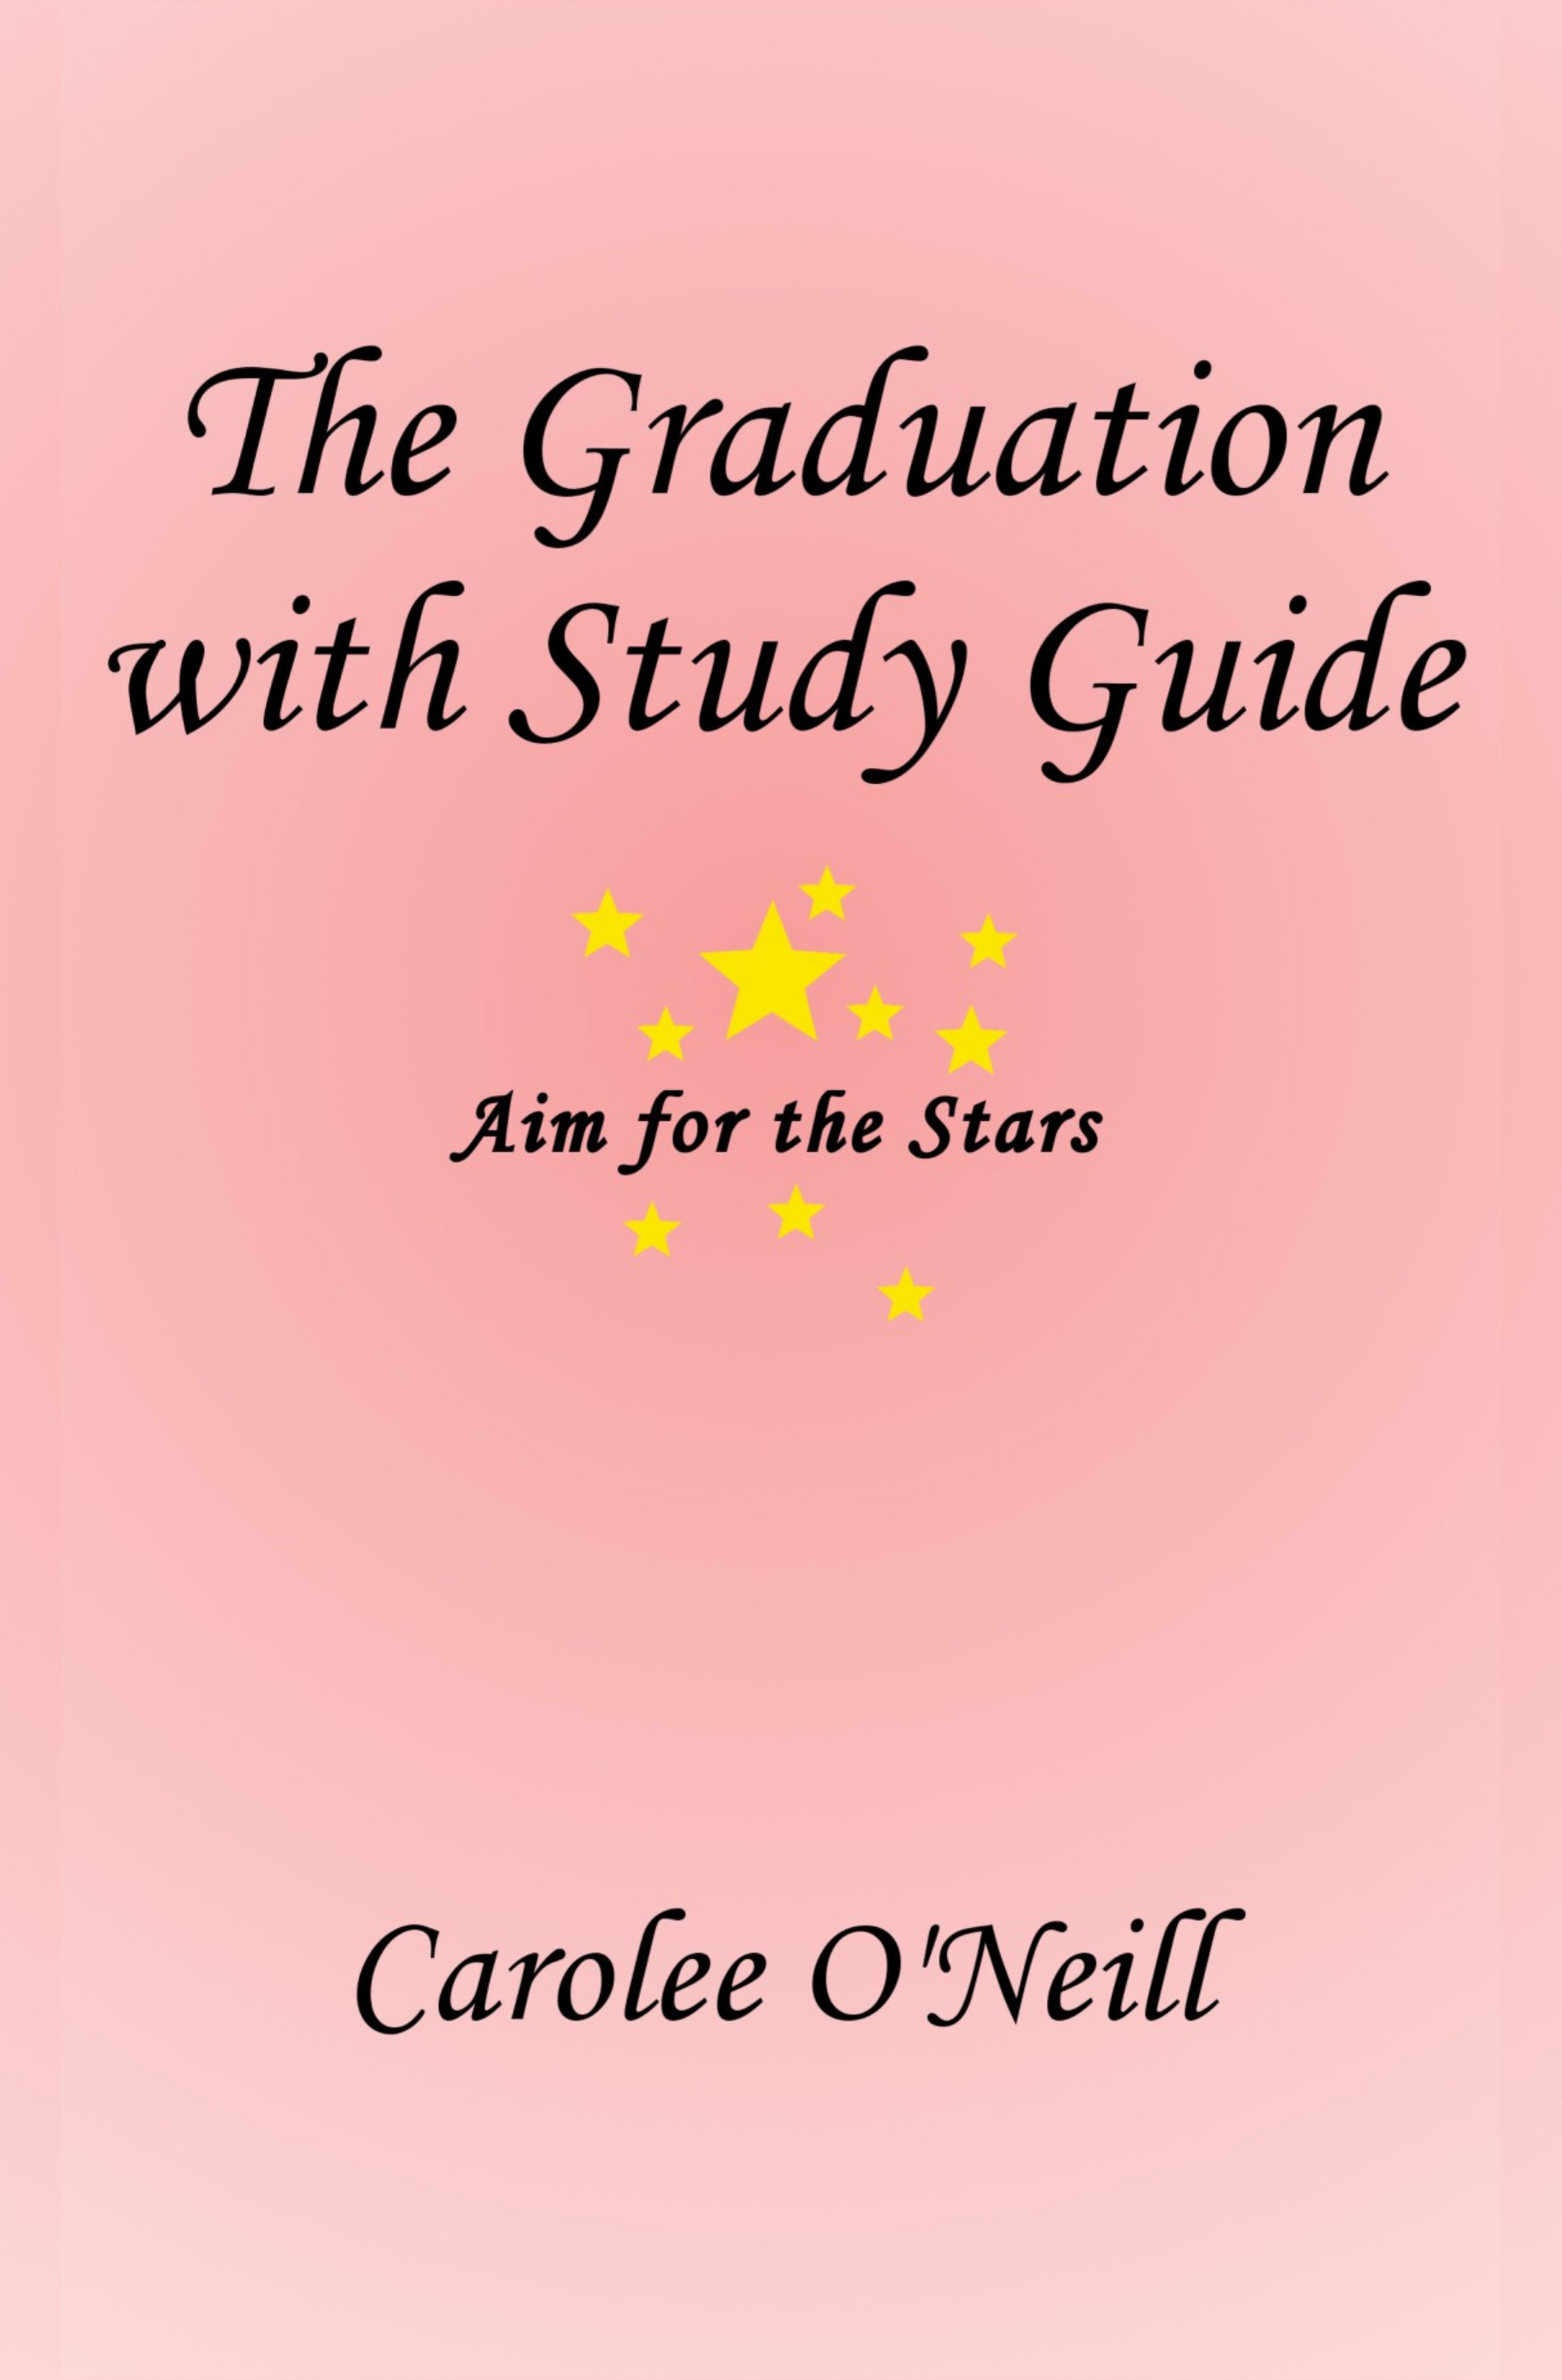 Grad Study Guide frtcvr 12 27 17 (1)